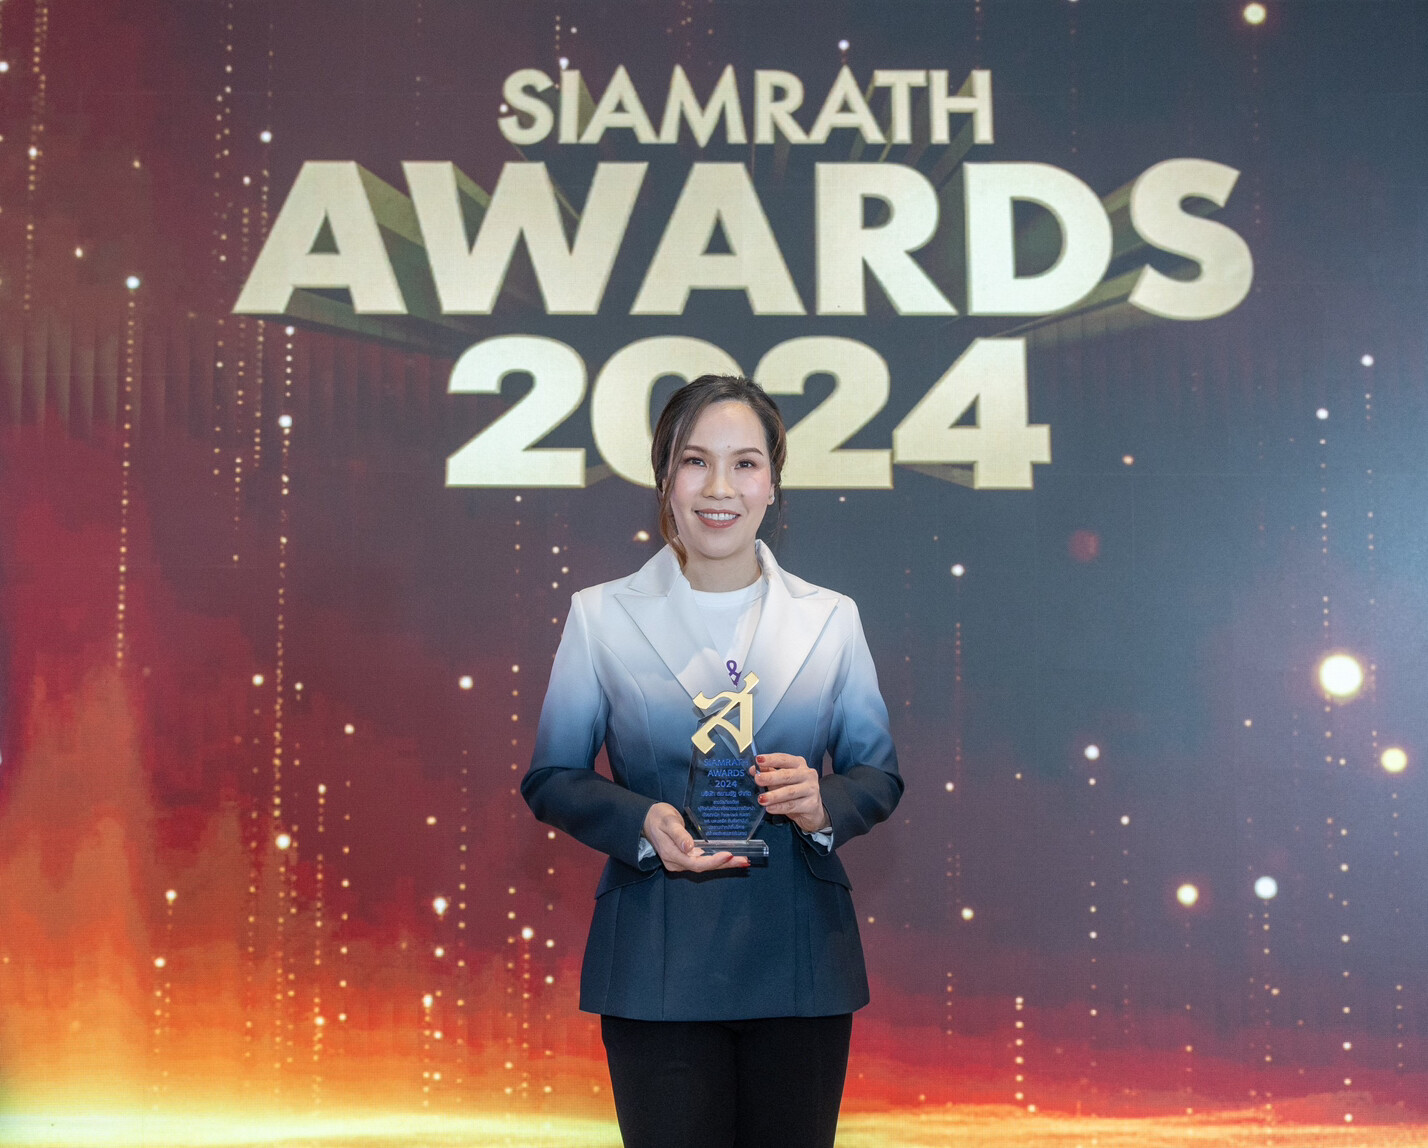 TRP คว้ารางวัลเกียรติยศ "Siamrath Awards 2024" ตอกย้ำ ผู้นำศัลยกรรมตกแต่งเฉพาะบนใบหน้าของประเทศไทย